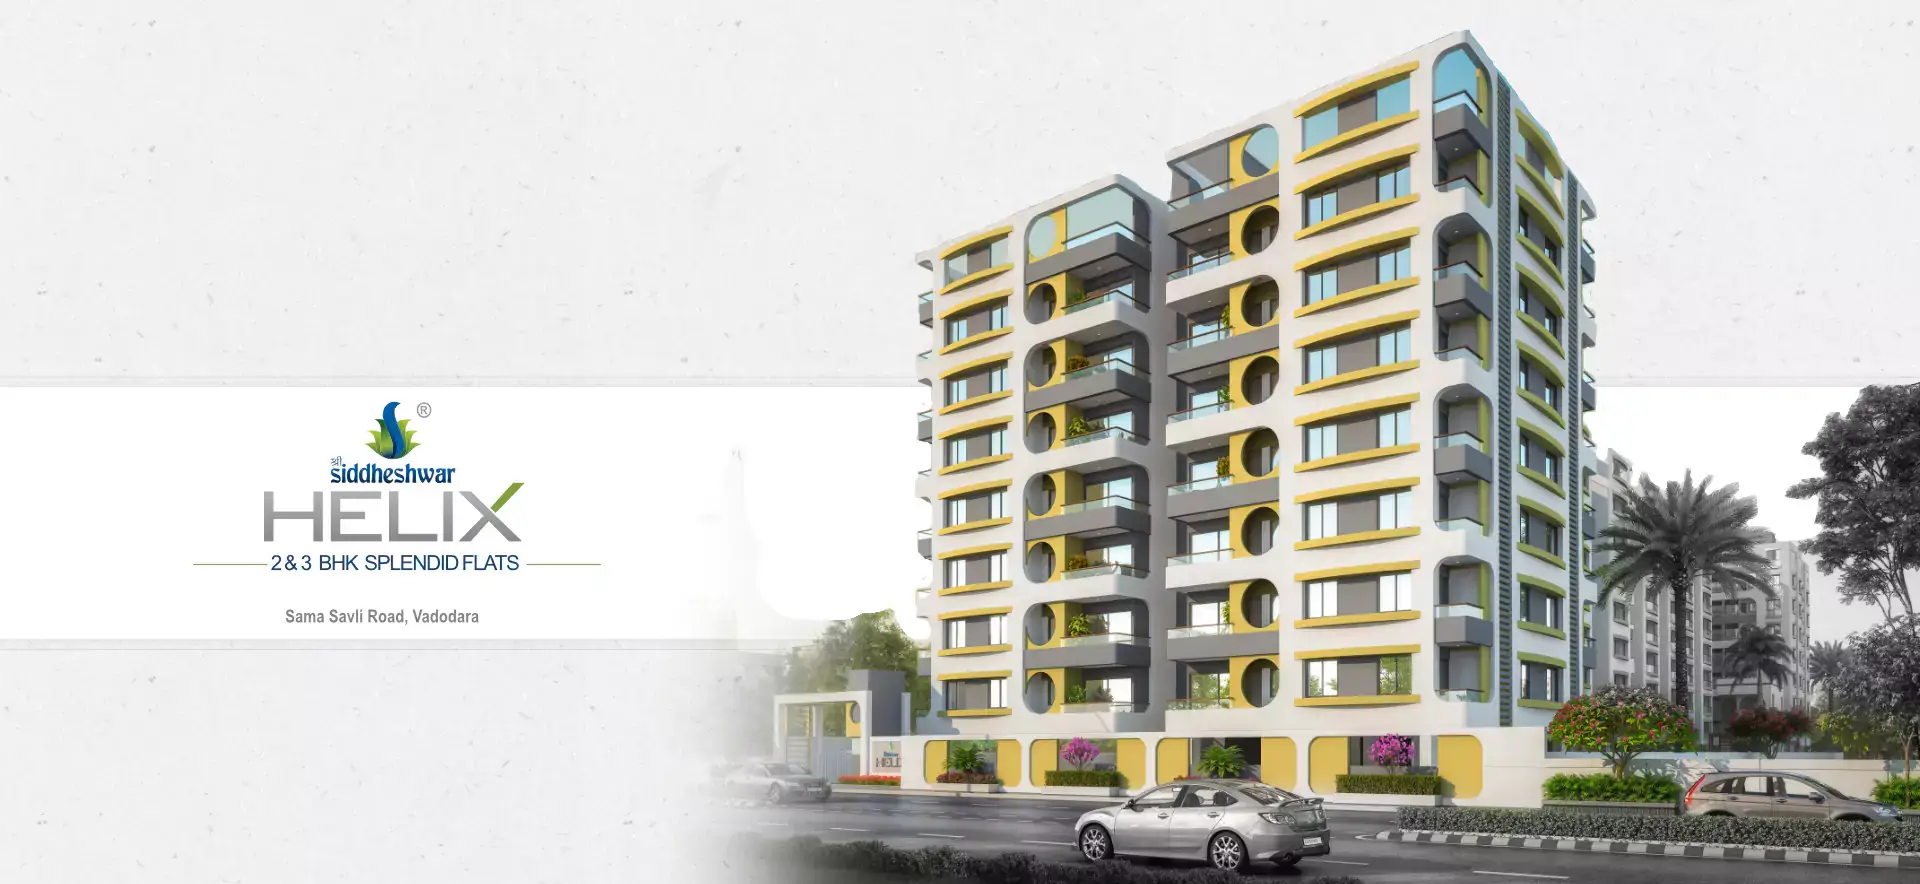 2 & 3 BHK flats in Vadodara - Shree Siddheshwar Helix